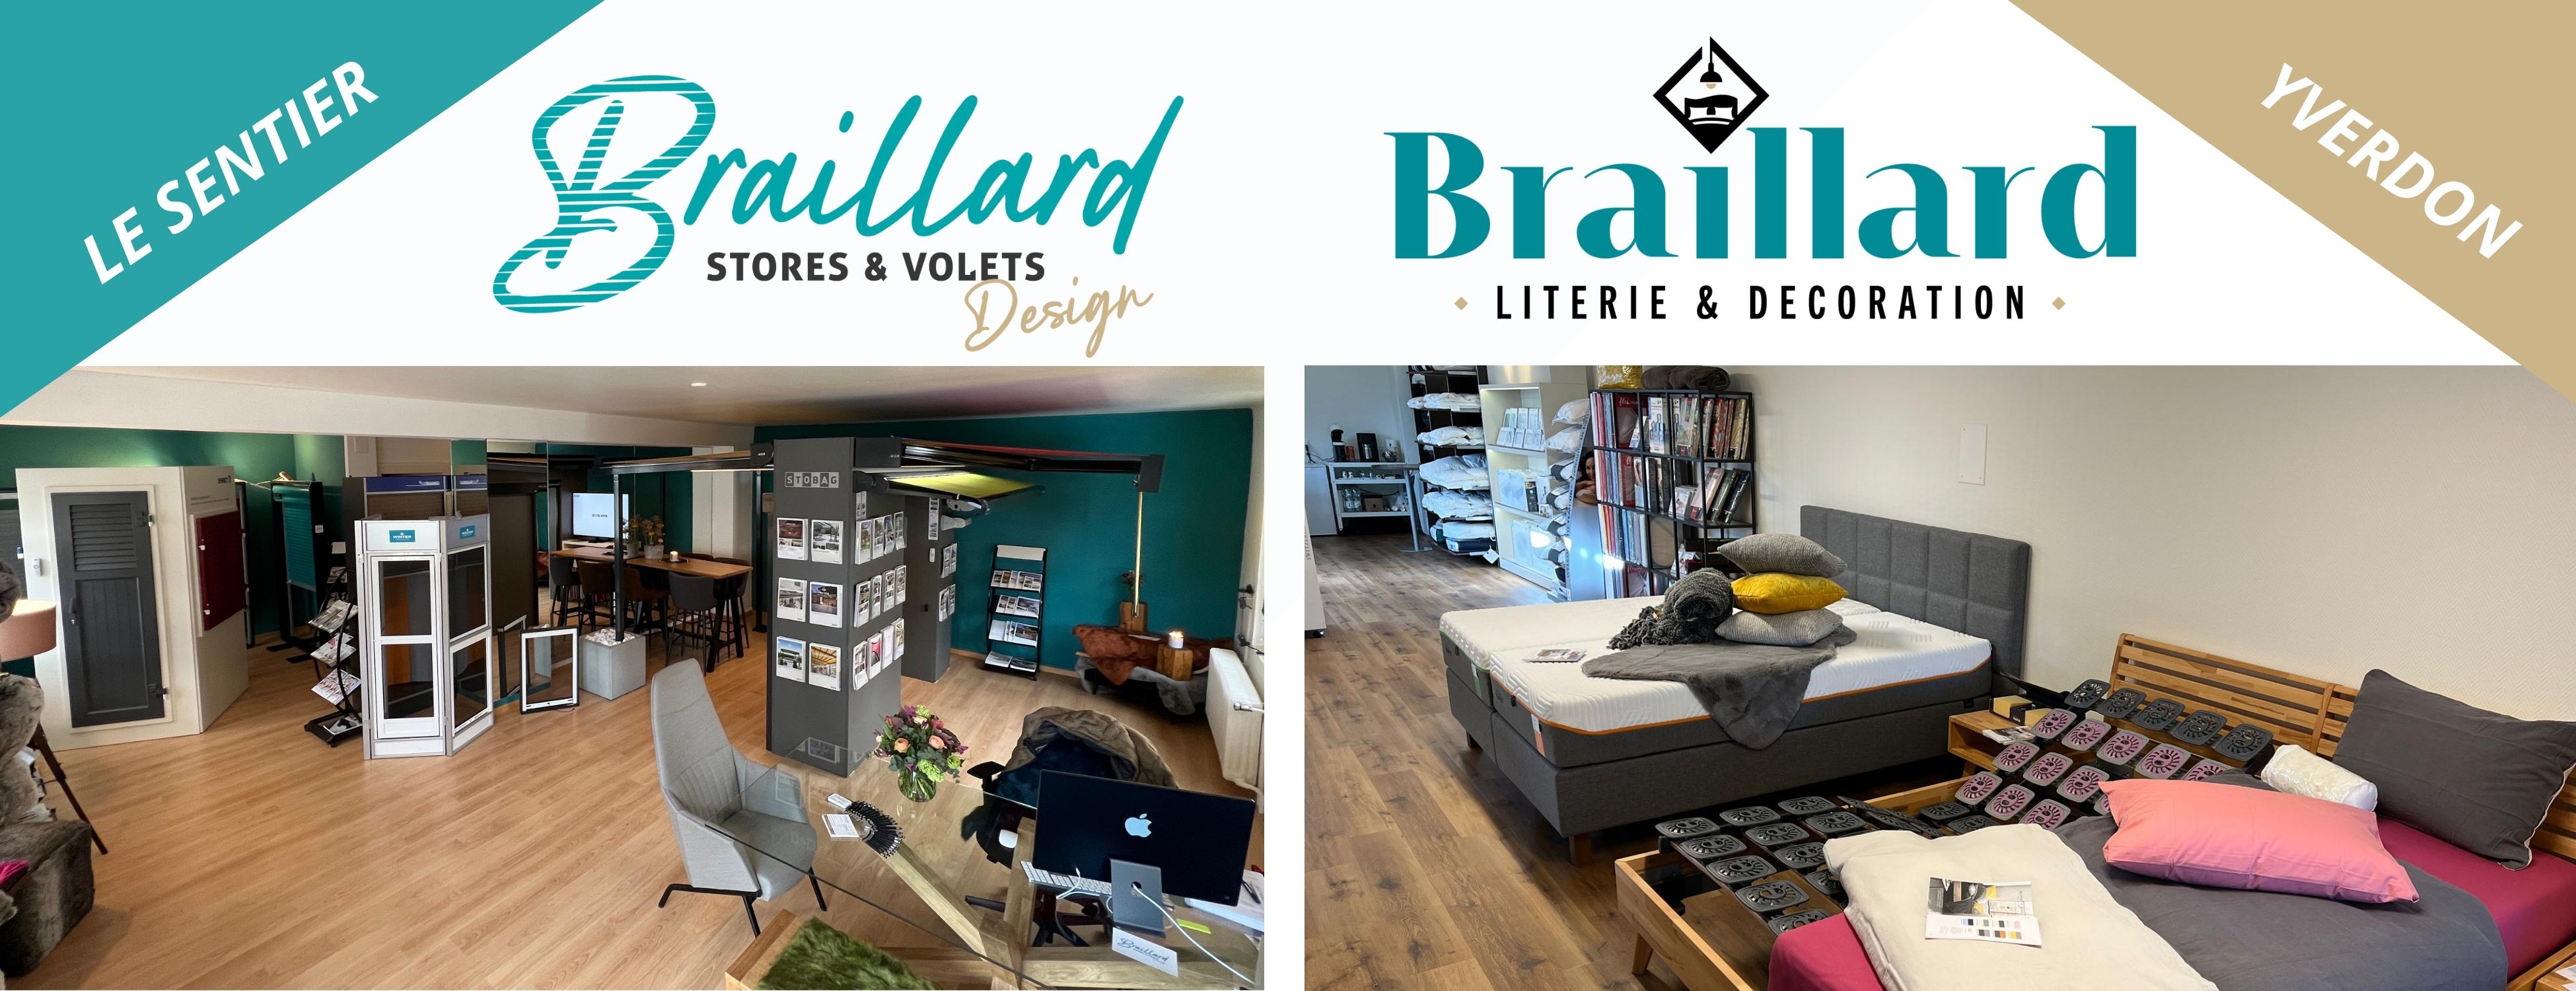 Braillard Stores & Volets Design & Braillard Literie & Décoration